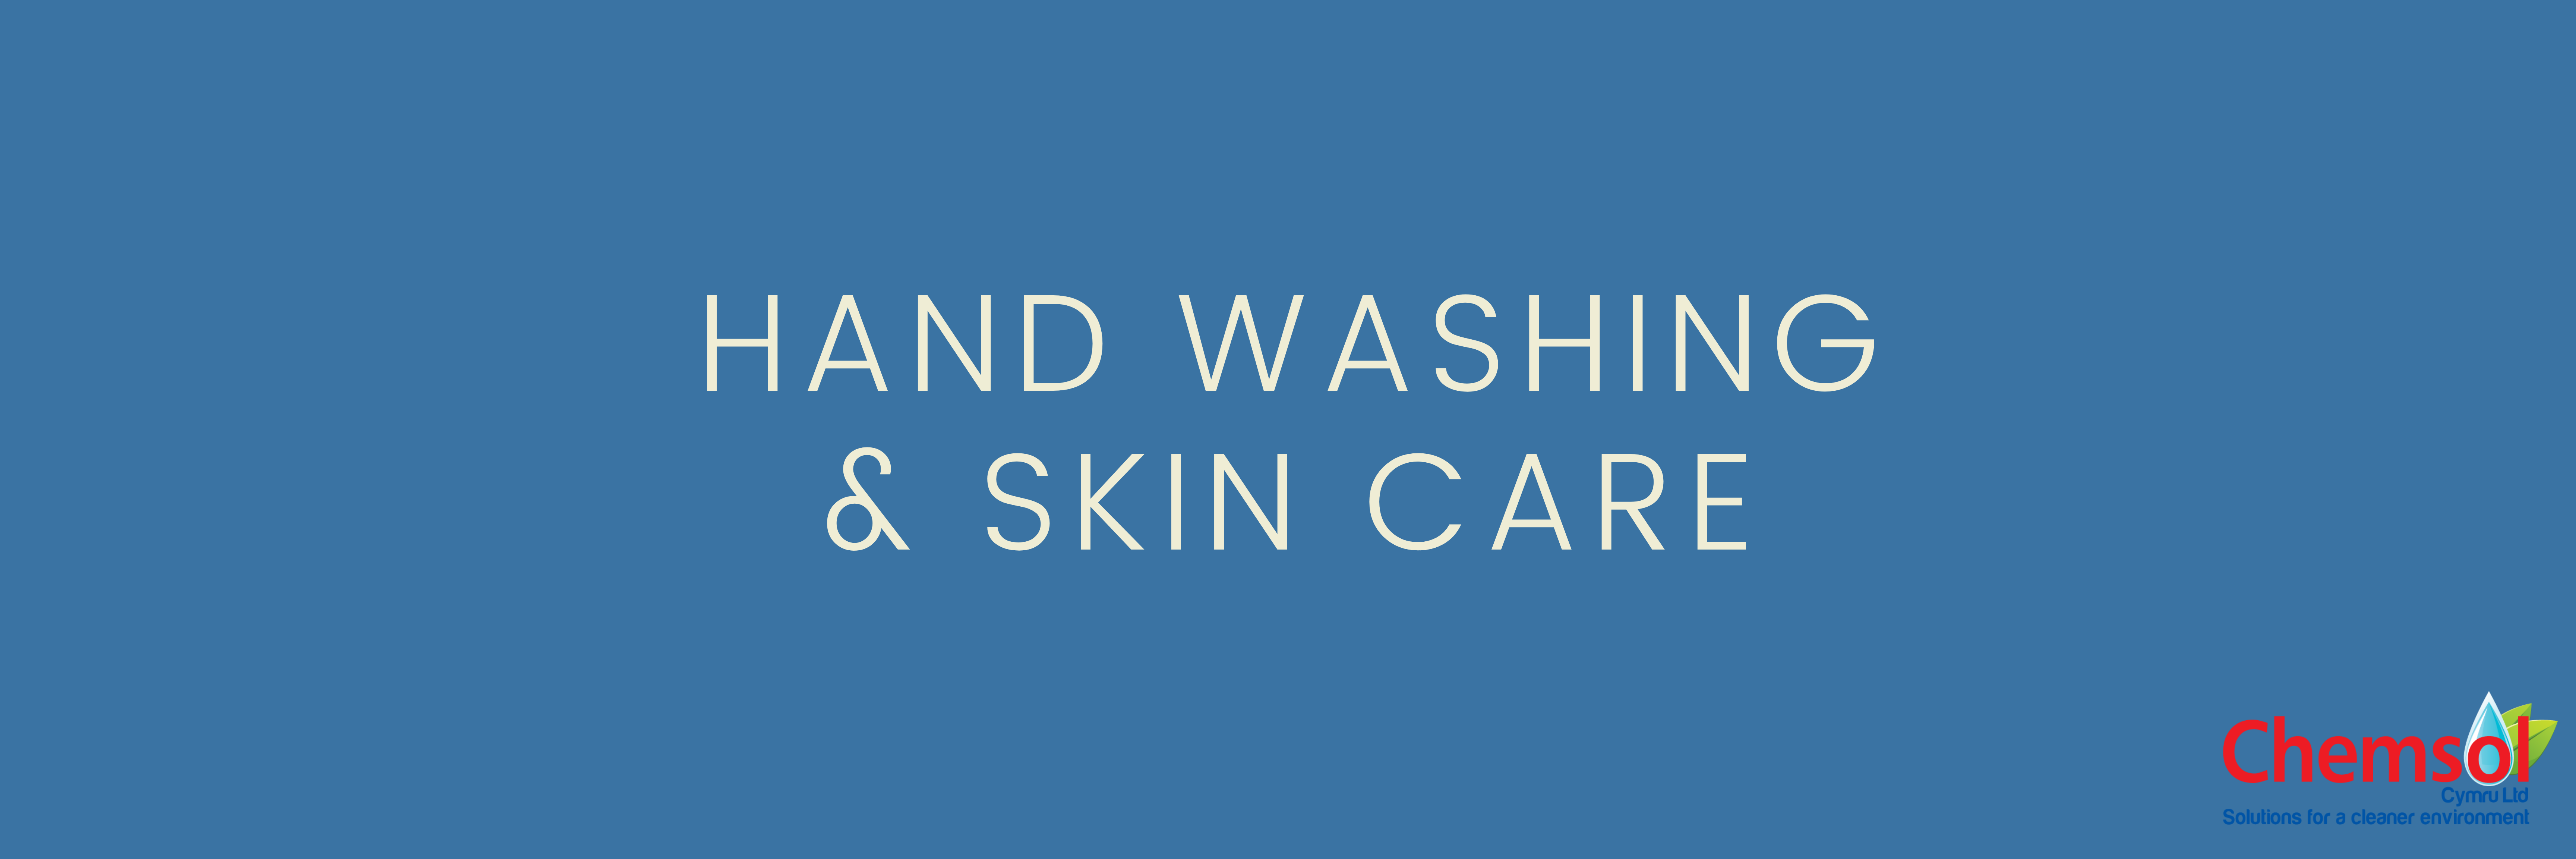 Hand Washing & Skin Care